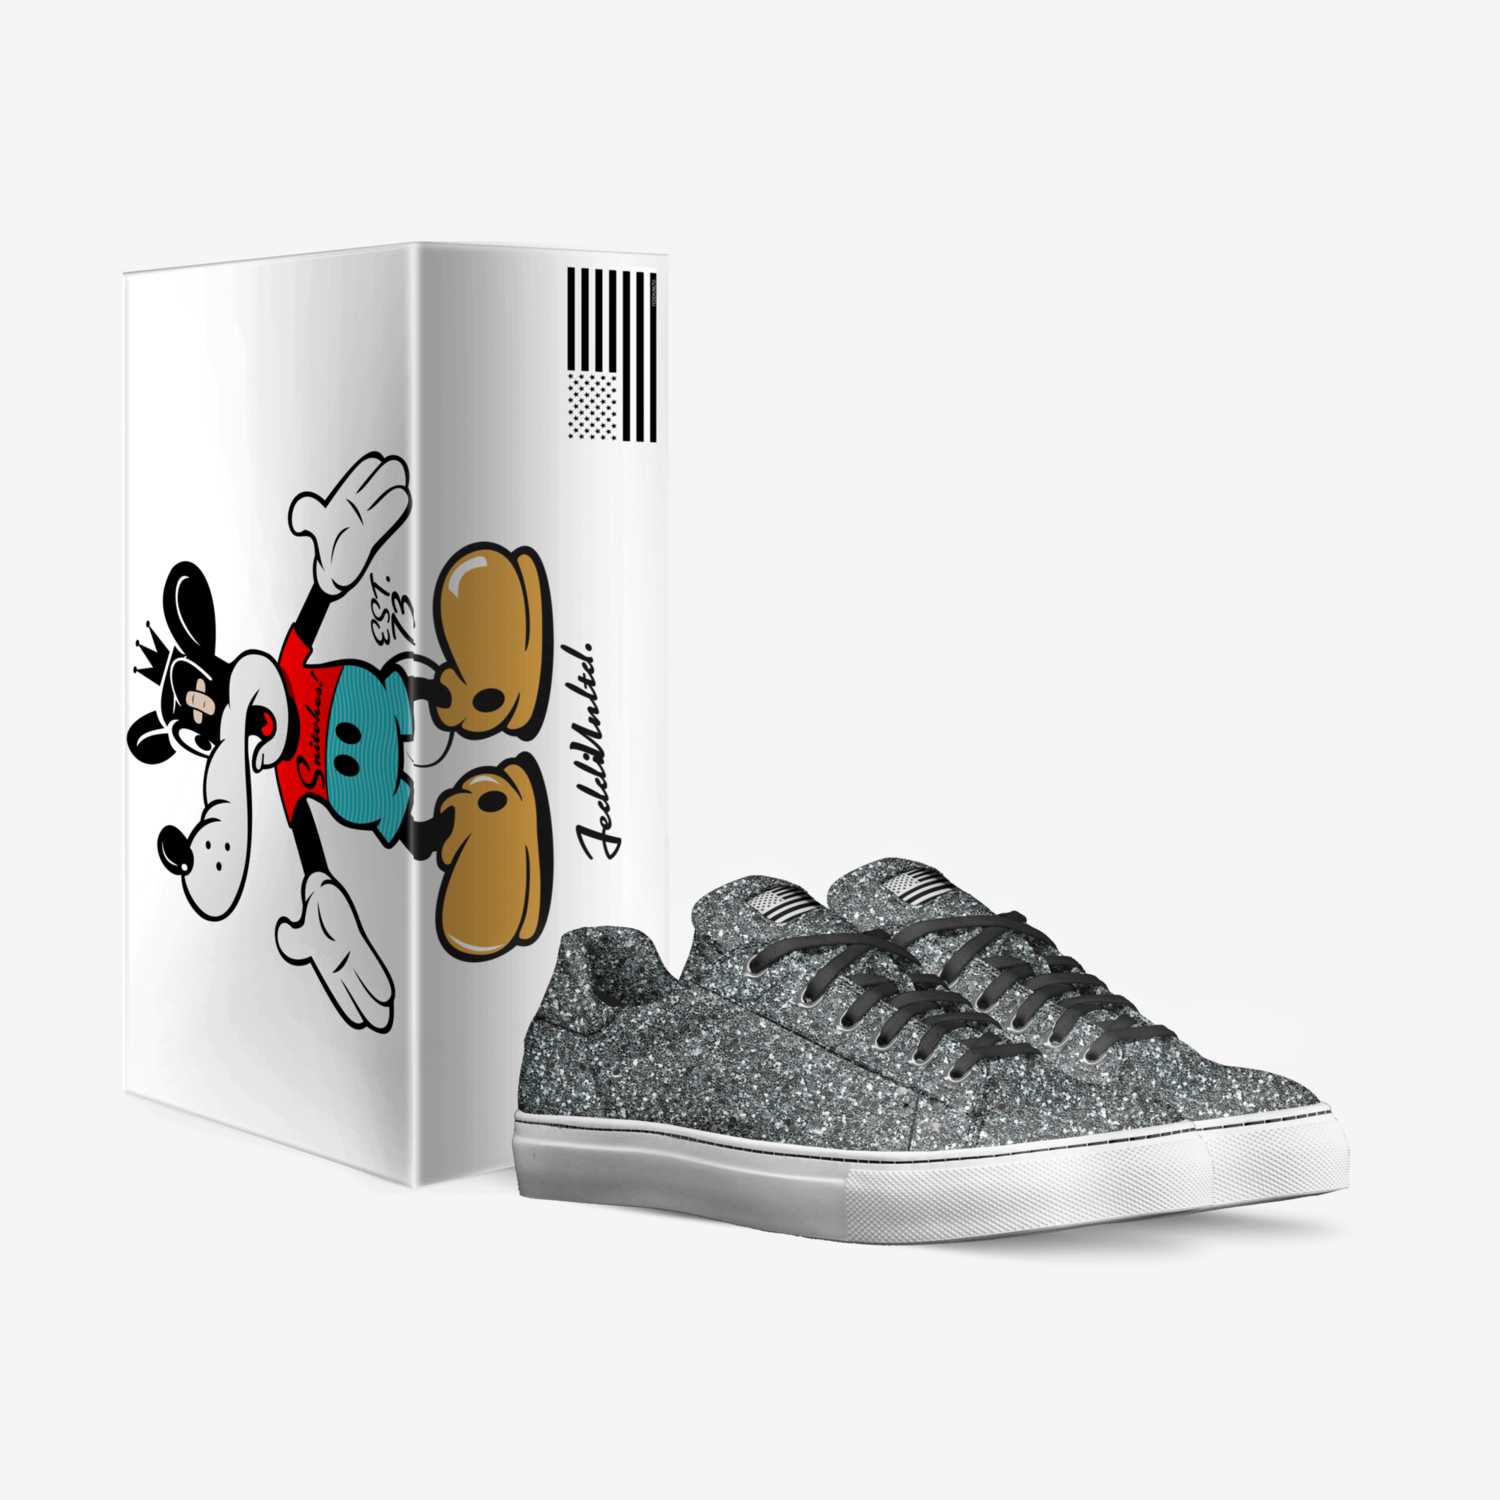 FeddiUnltd. custom made in Italy shoes by Lloyd Elliott | Box view